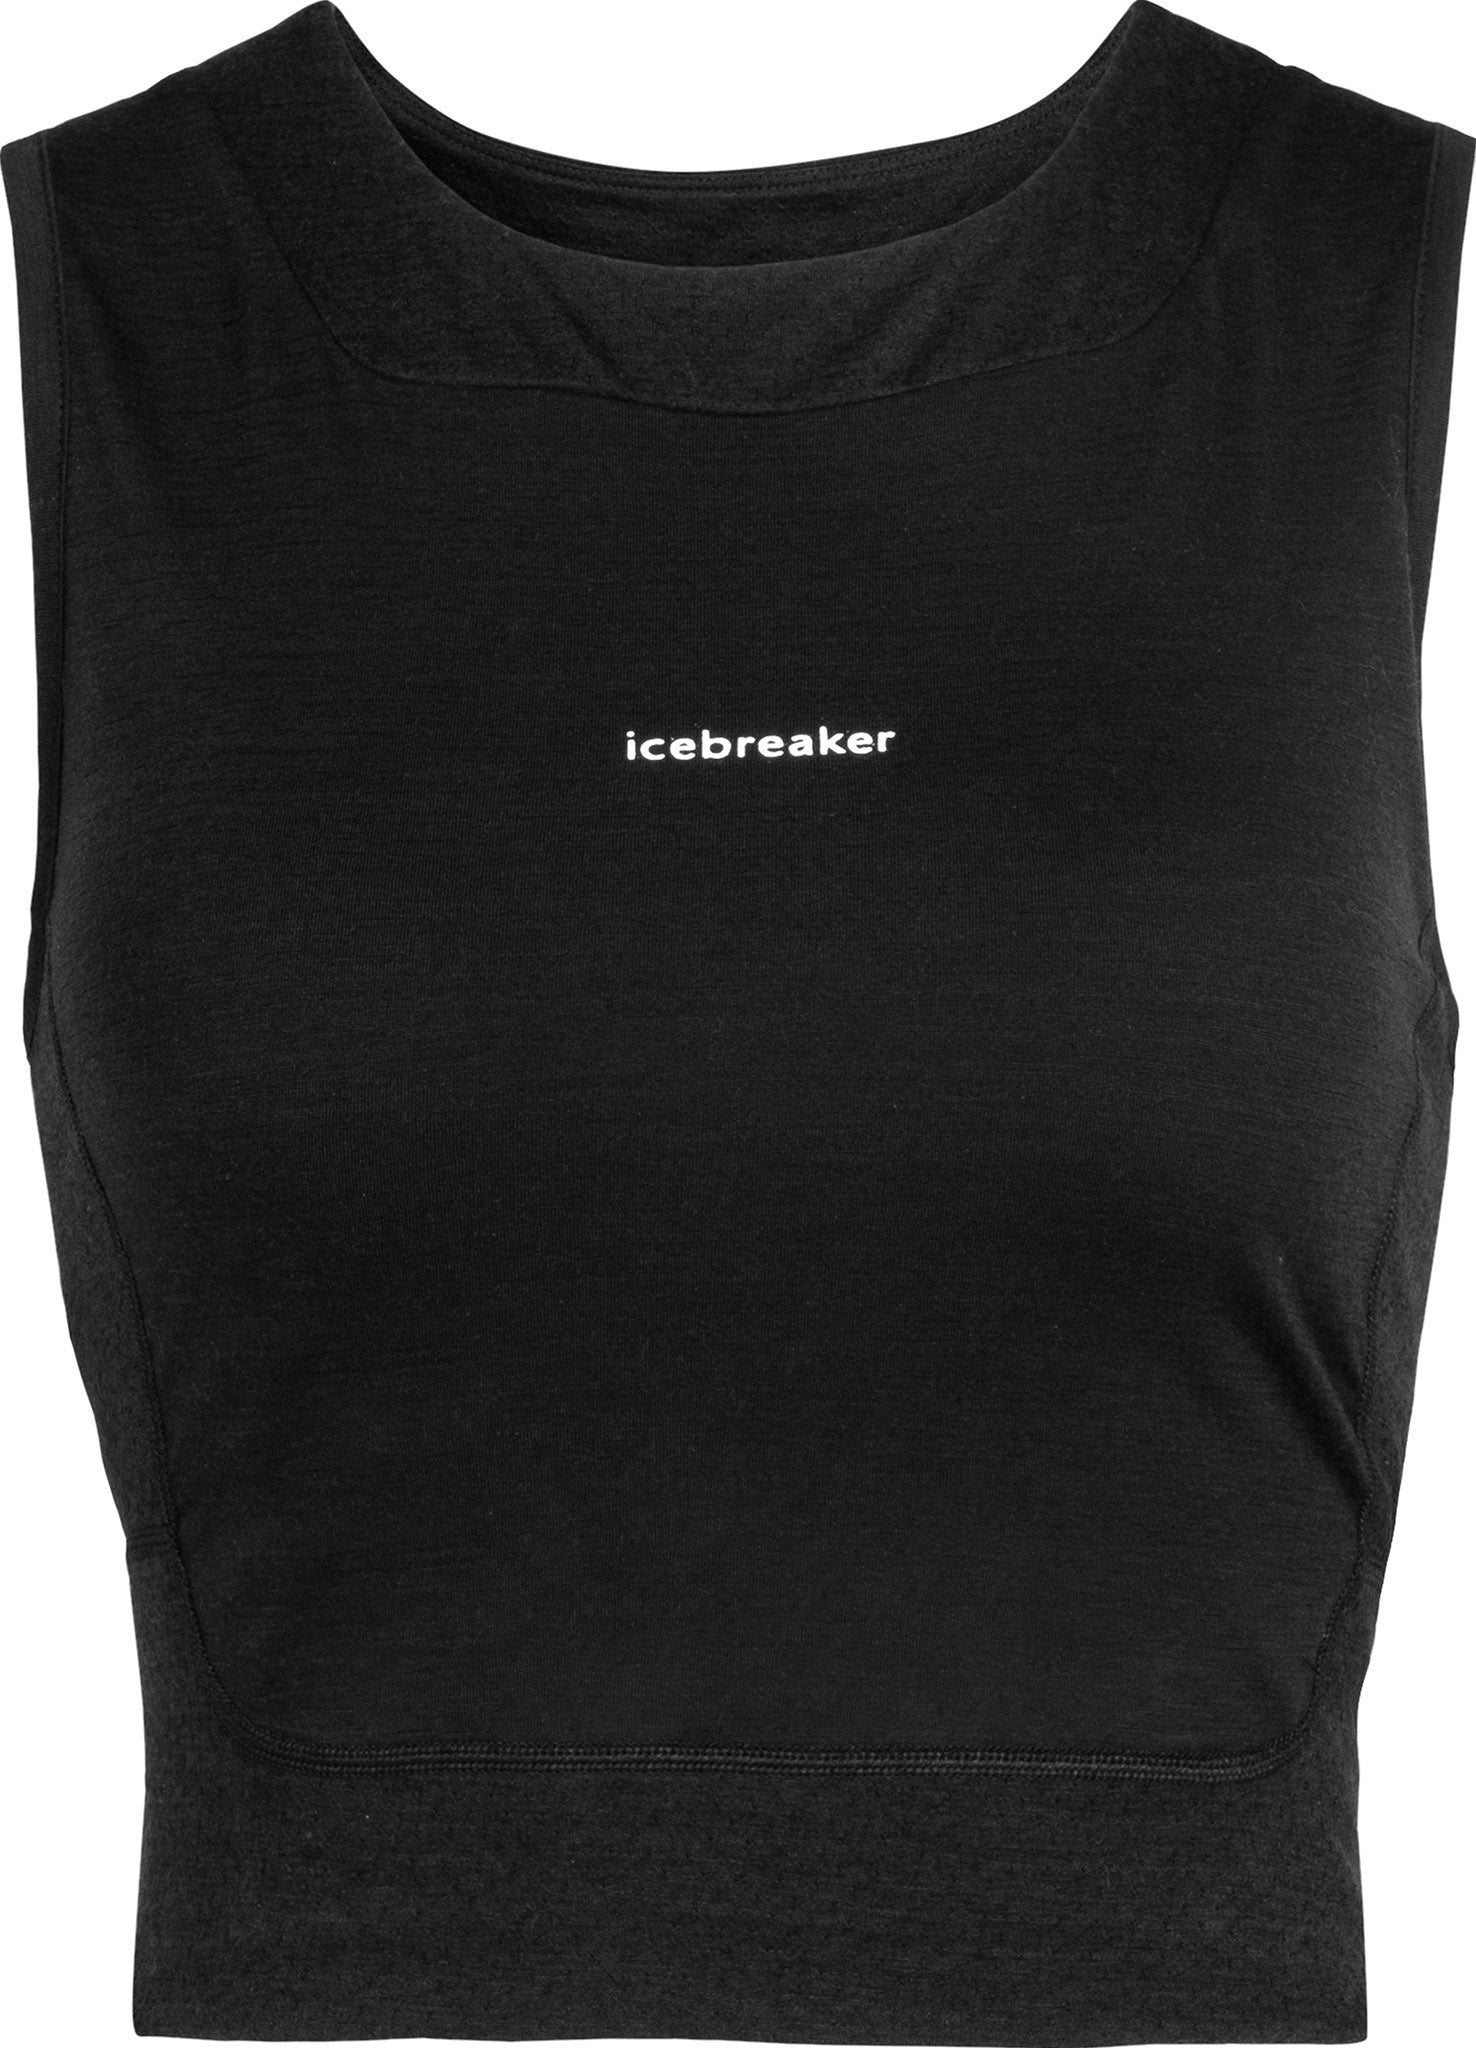 Icebreaker ZoneKnit Cropped Bra-Tank Top - Women's - Clothing